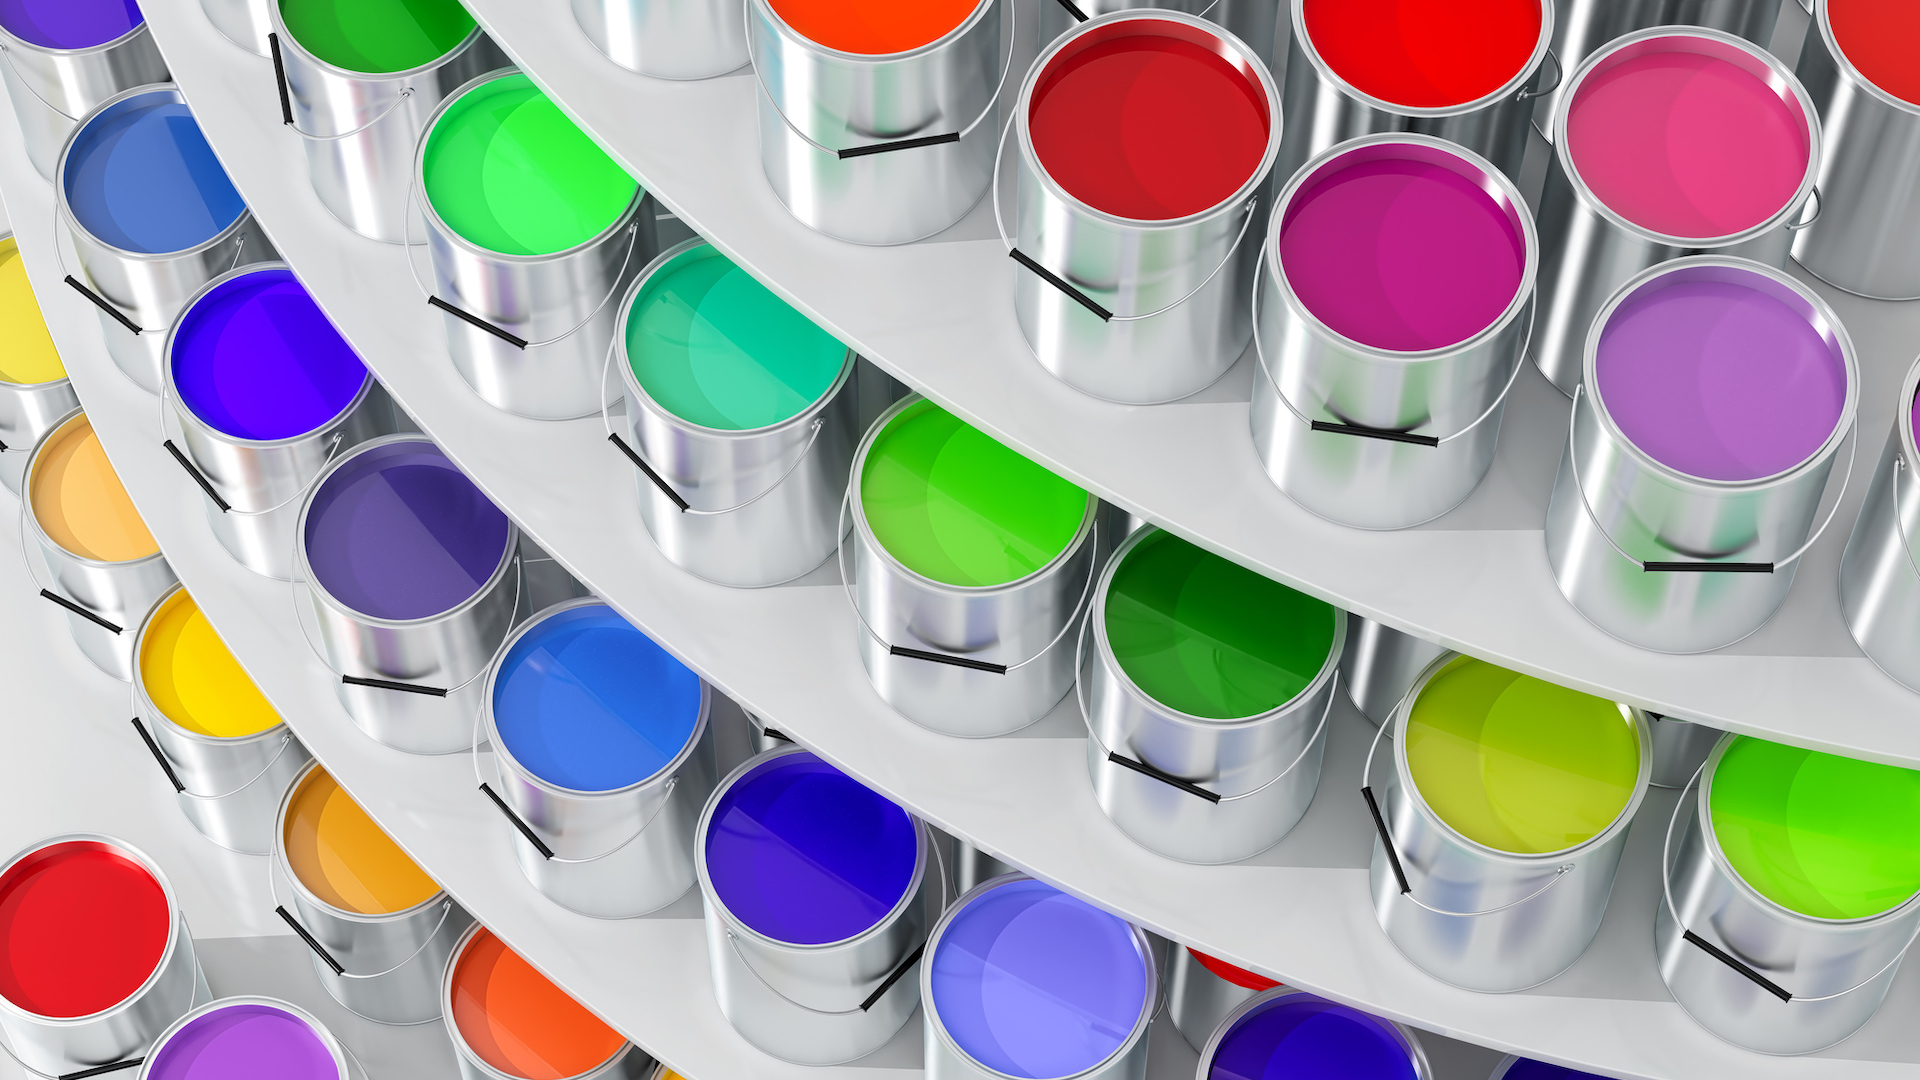 Coloured paints arranged on a shelves